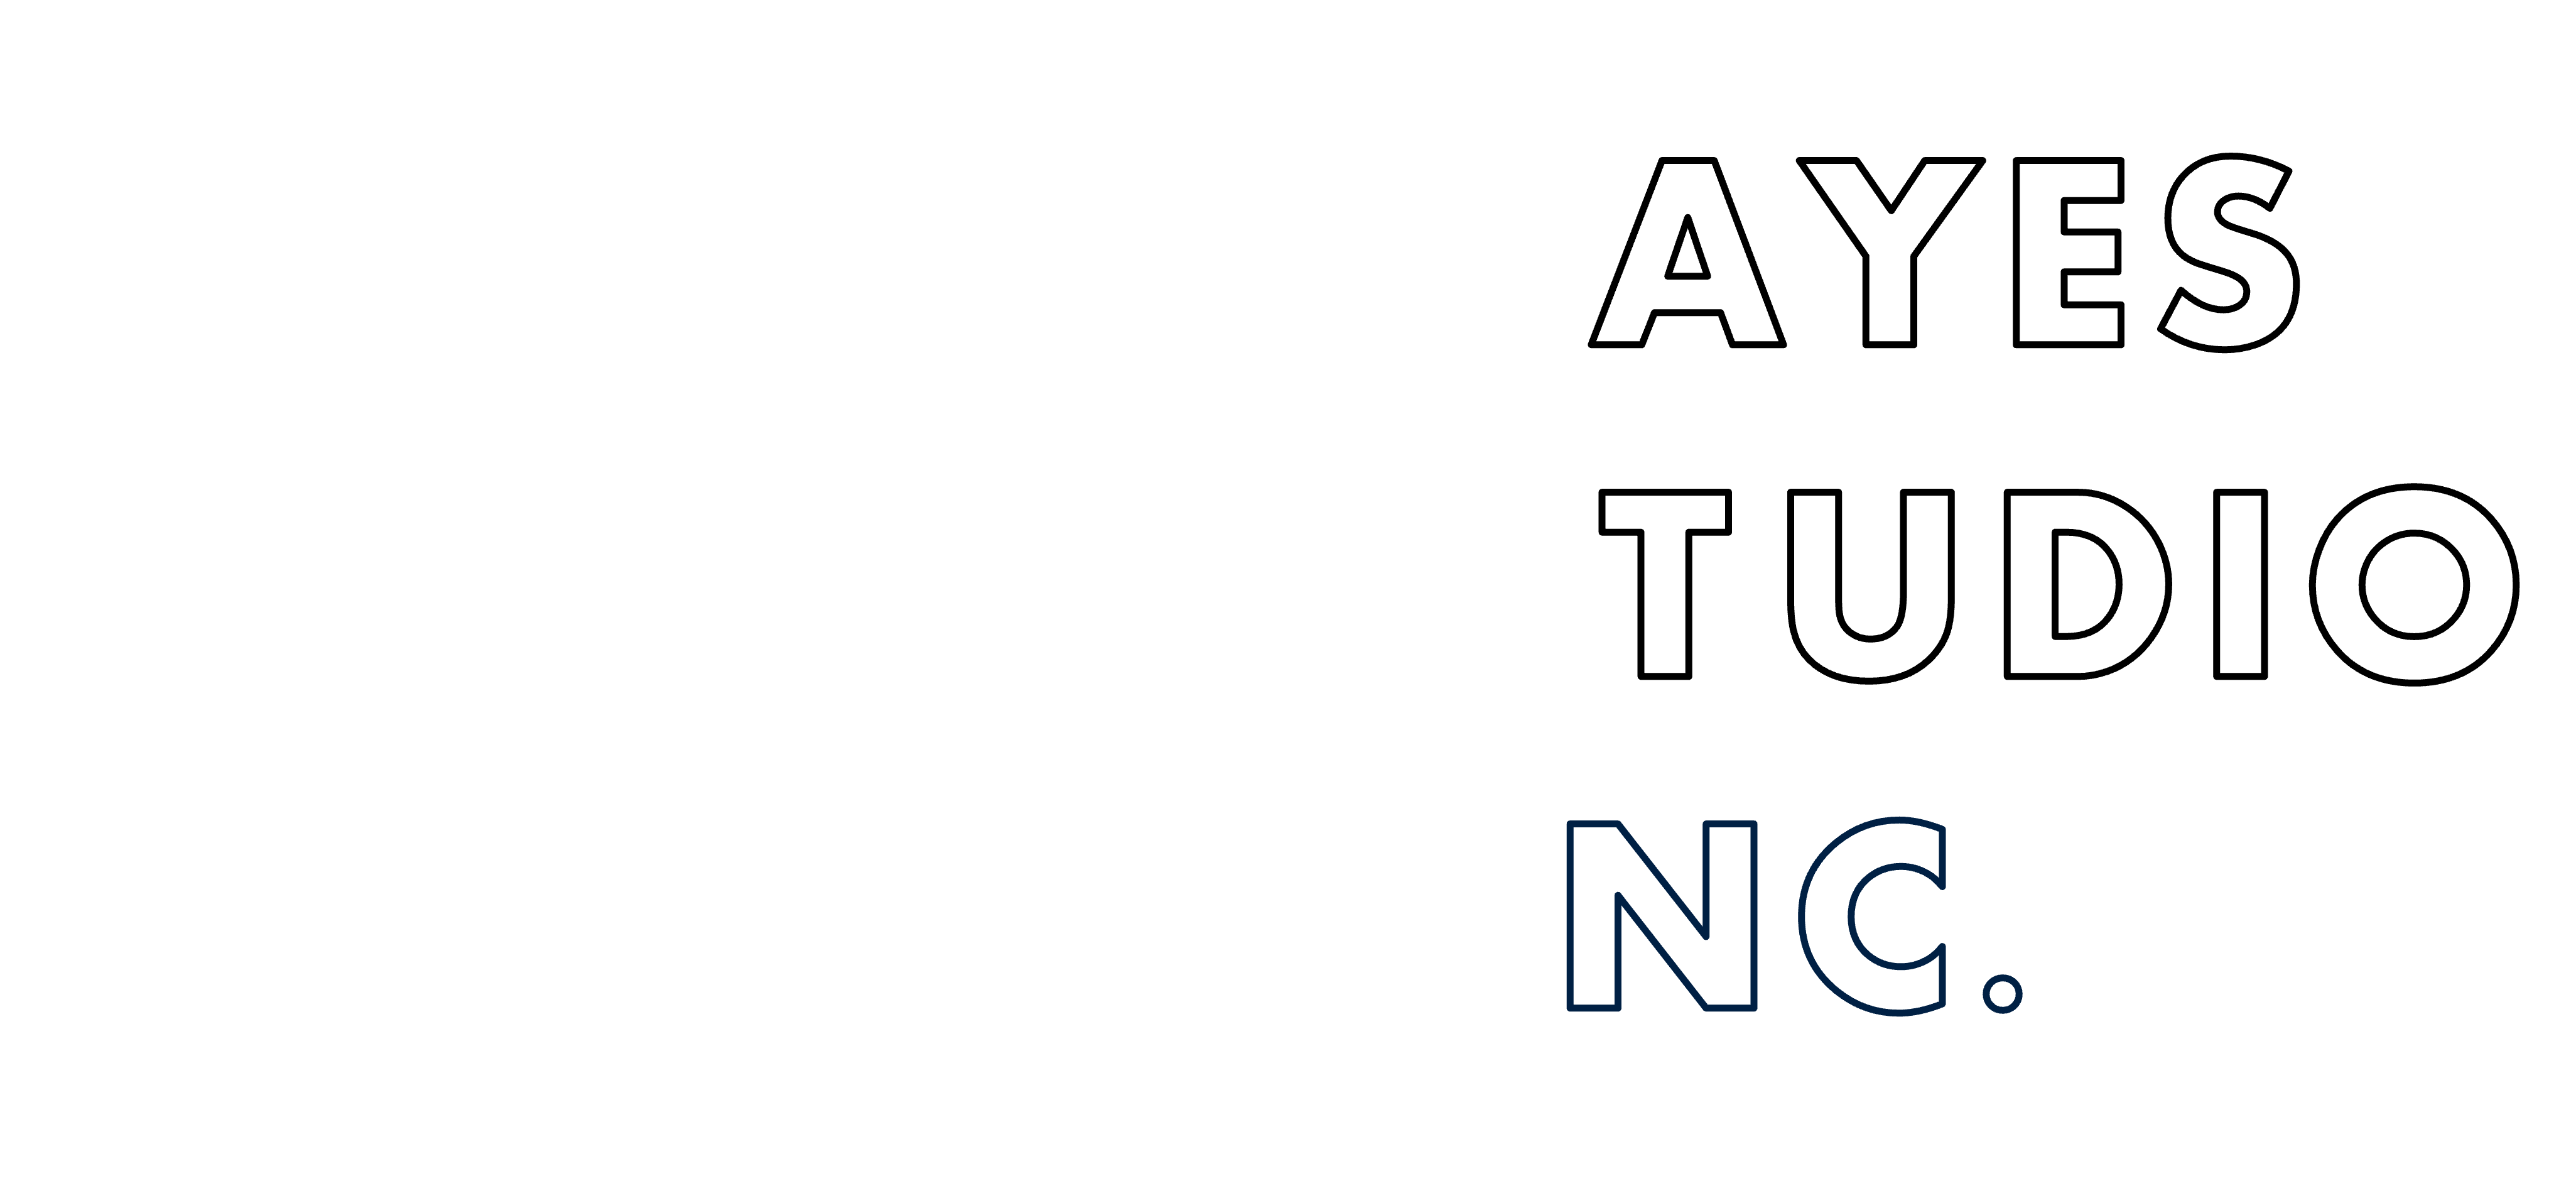 Bayes Studio Inc.